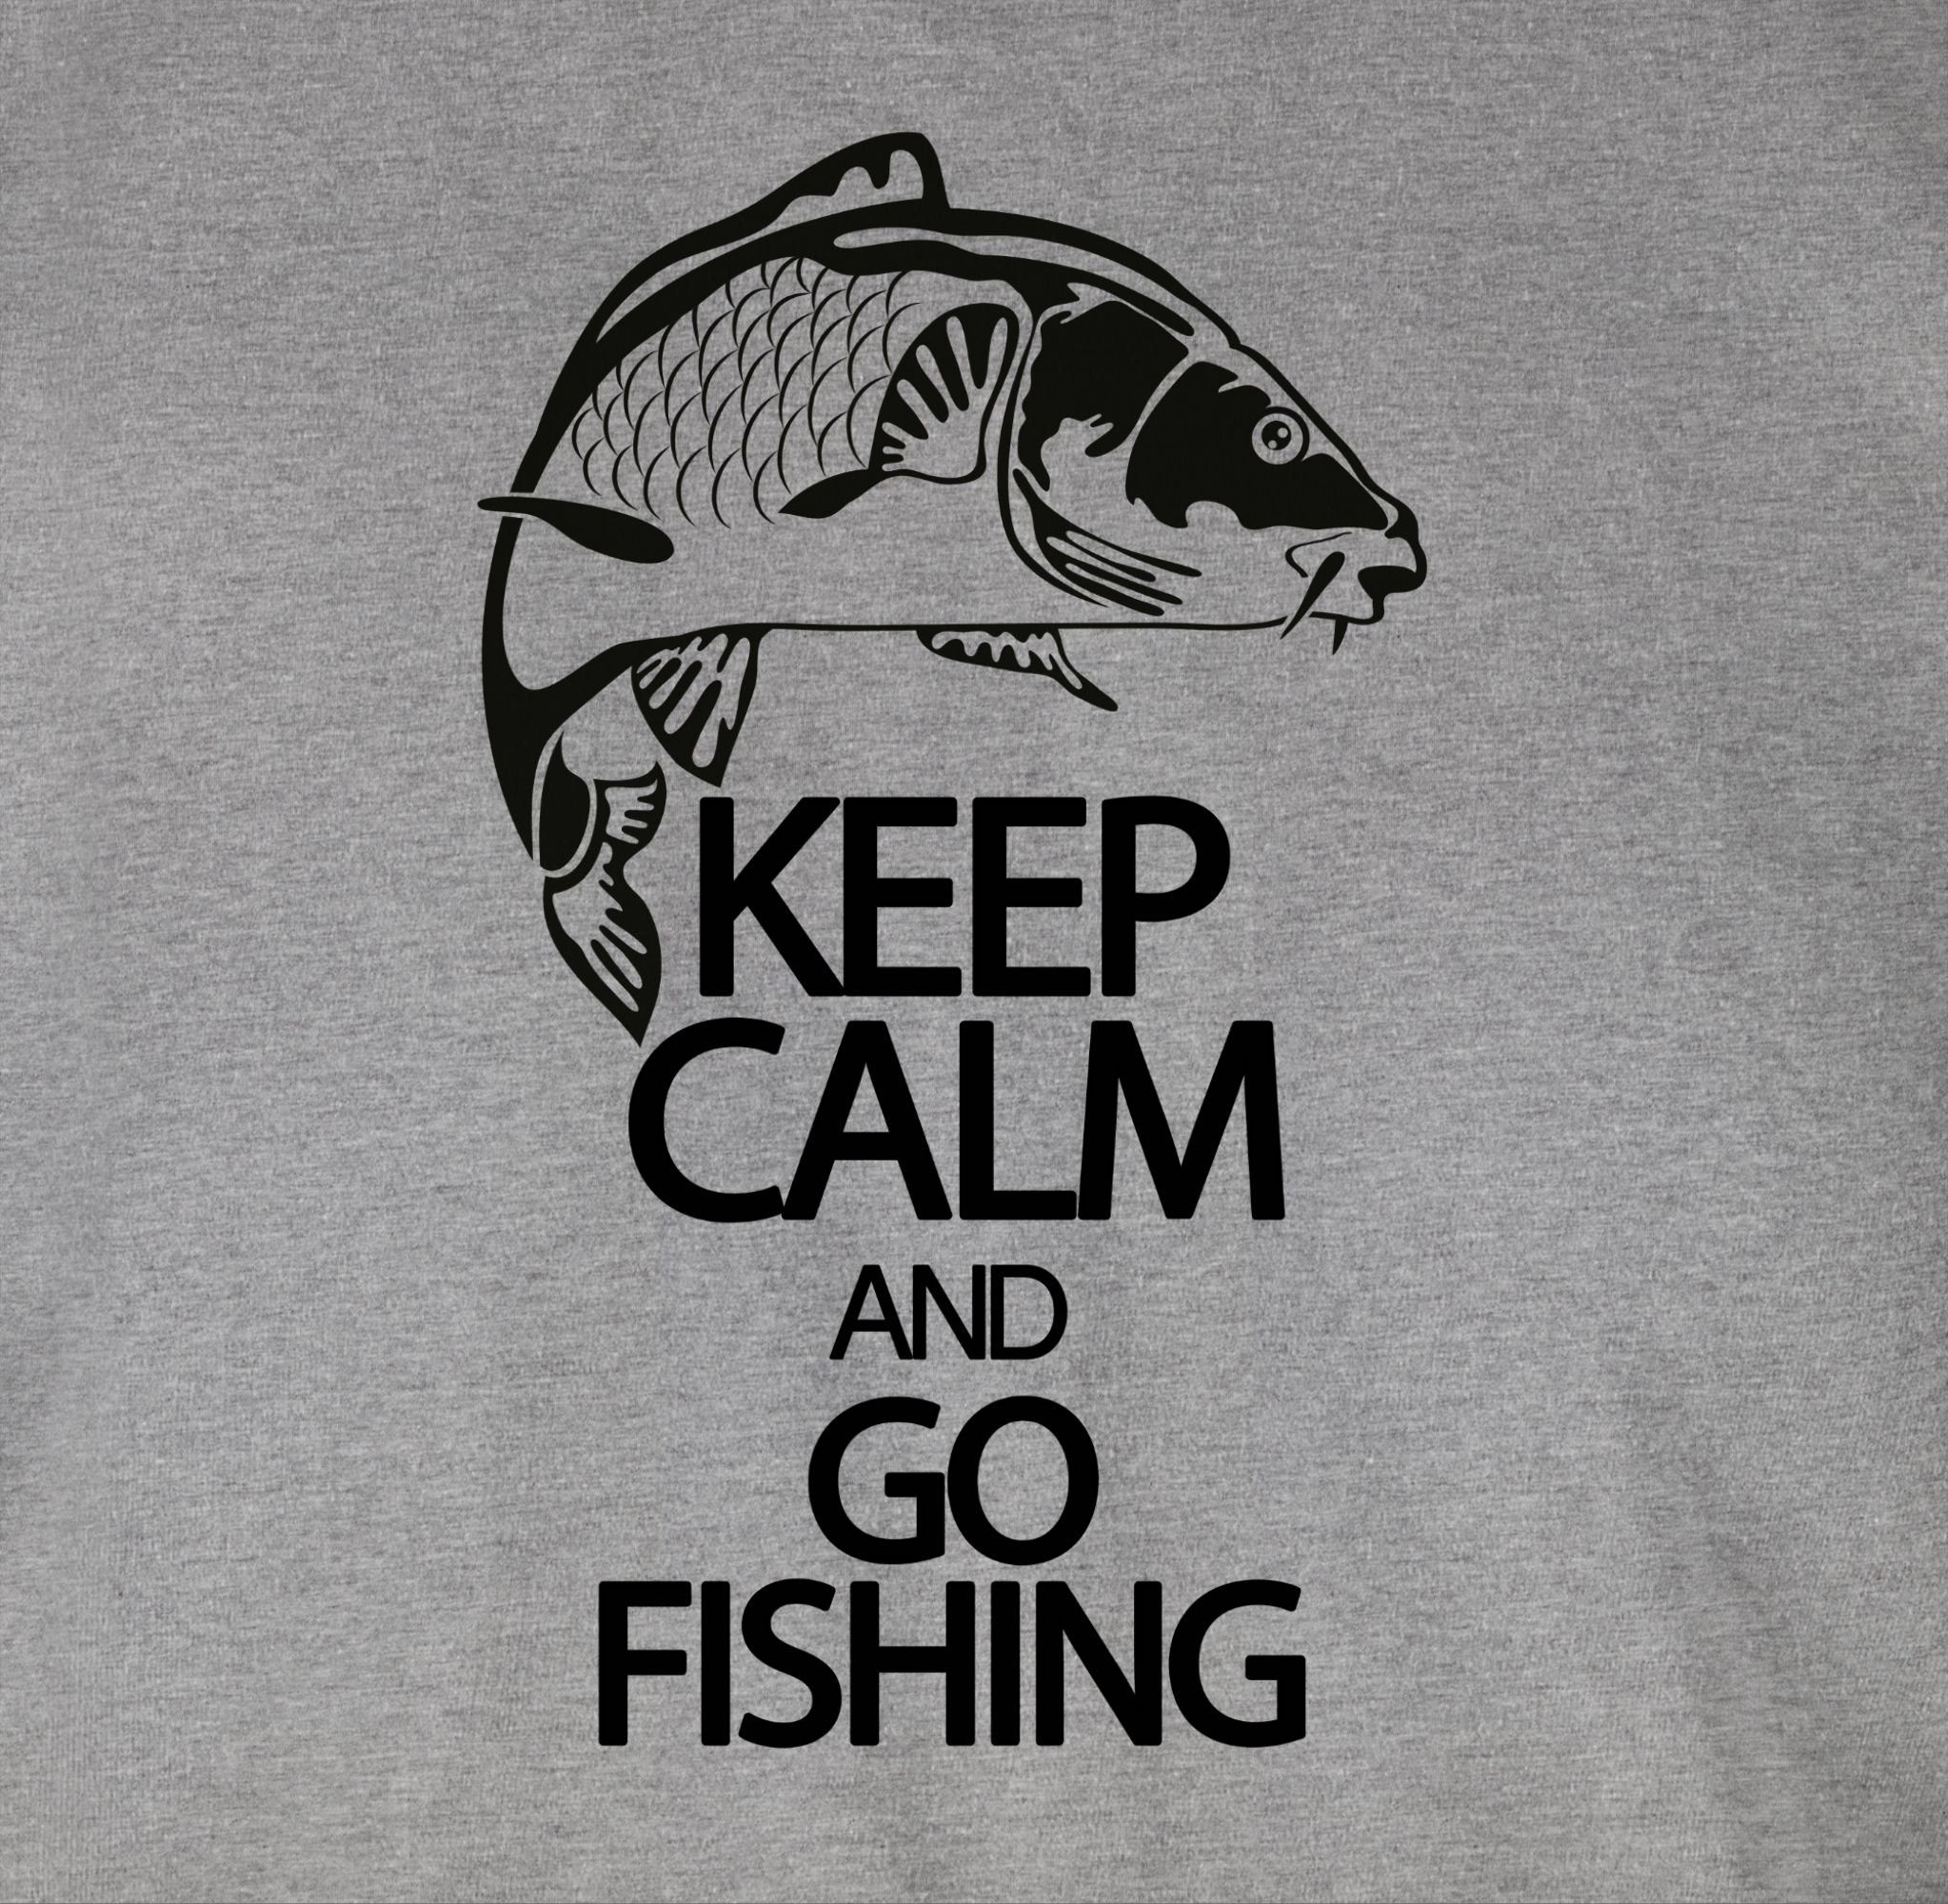 Angler Grau T-Shirt Fishing go and Shirtracer meliert Geschenke Keep calm 3